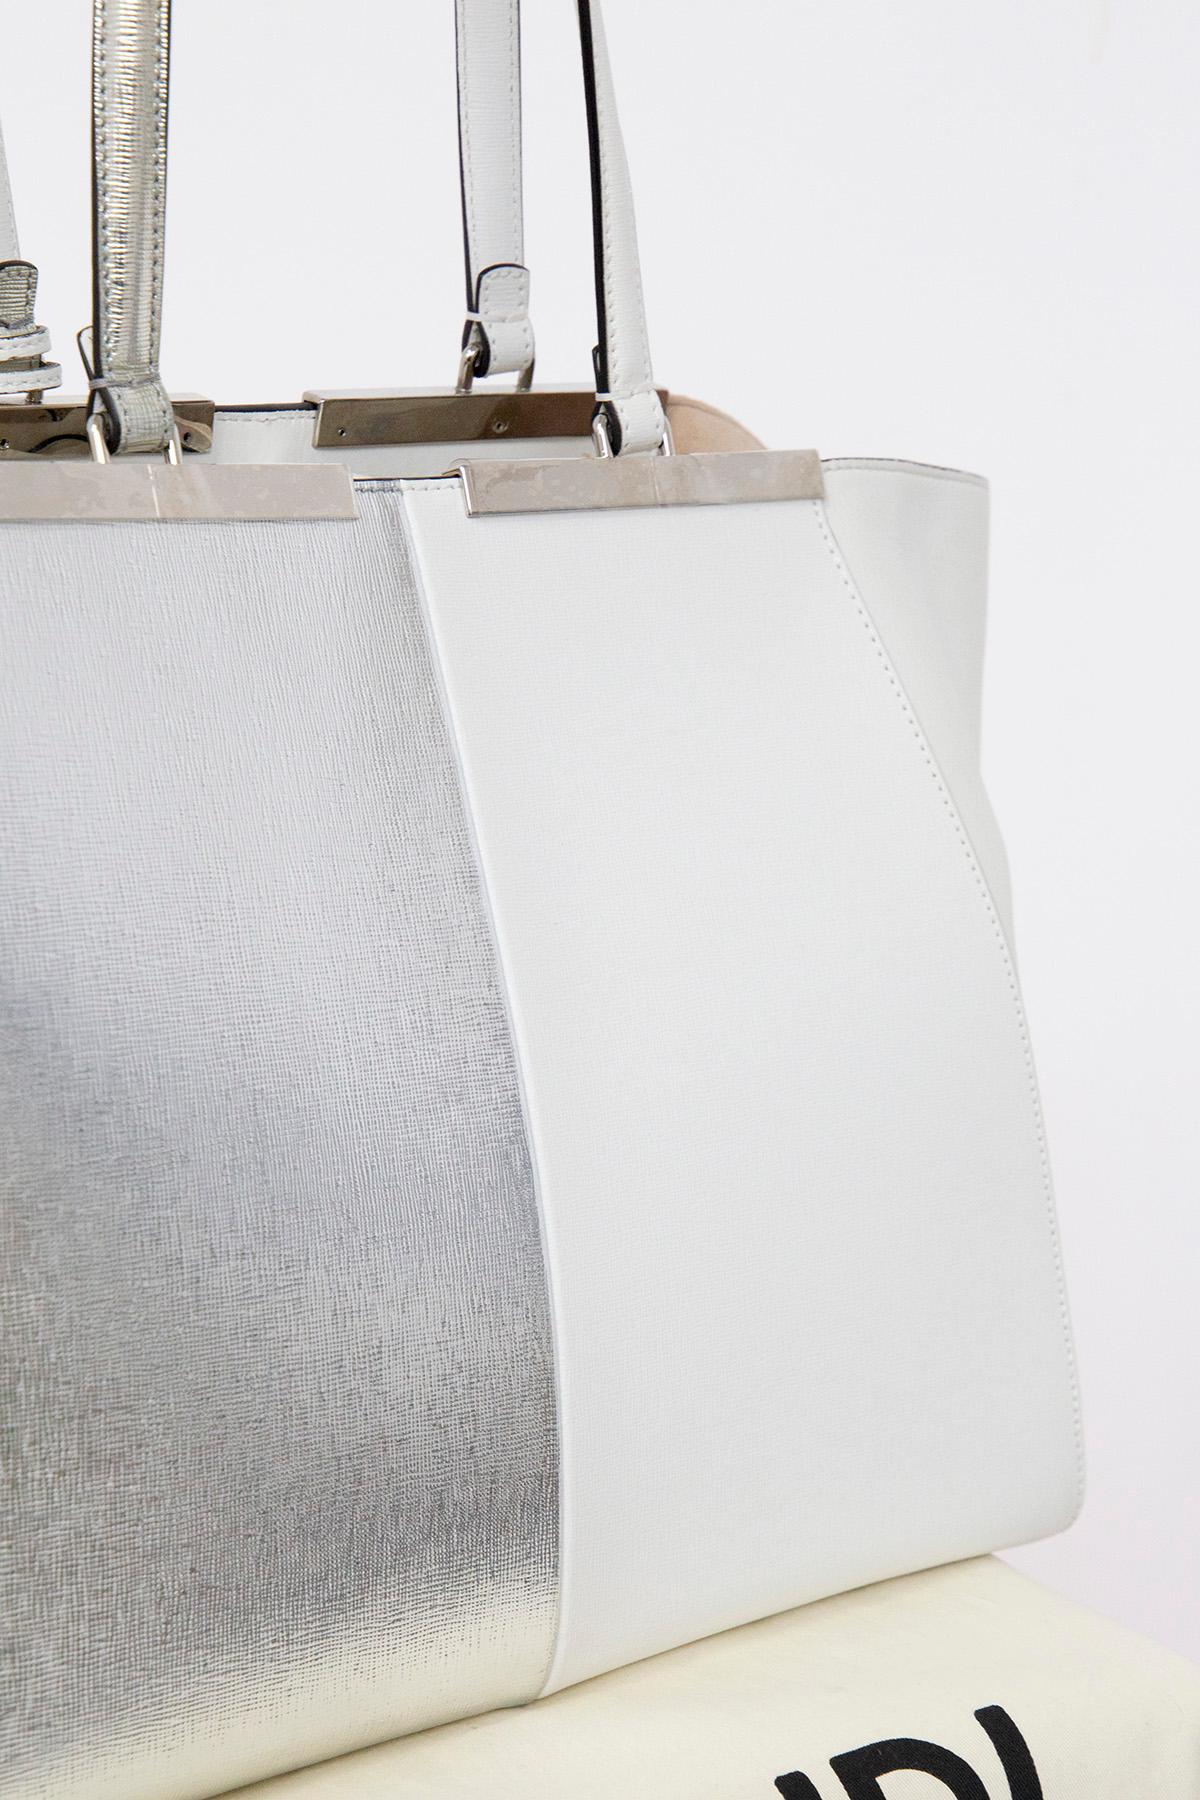 Gray Fendi 3Jours White Leather Shopper Bag  For Sale